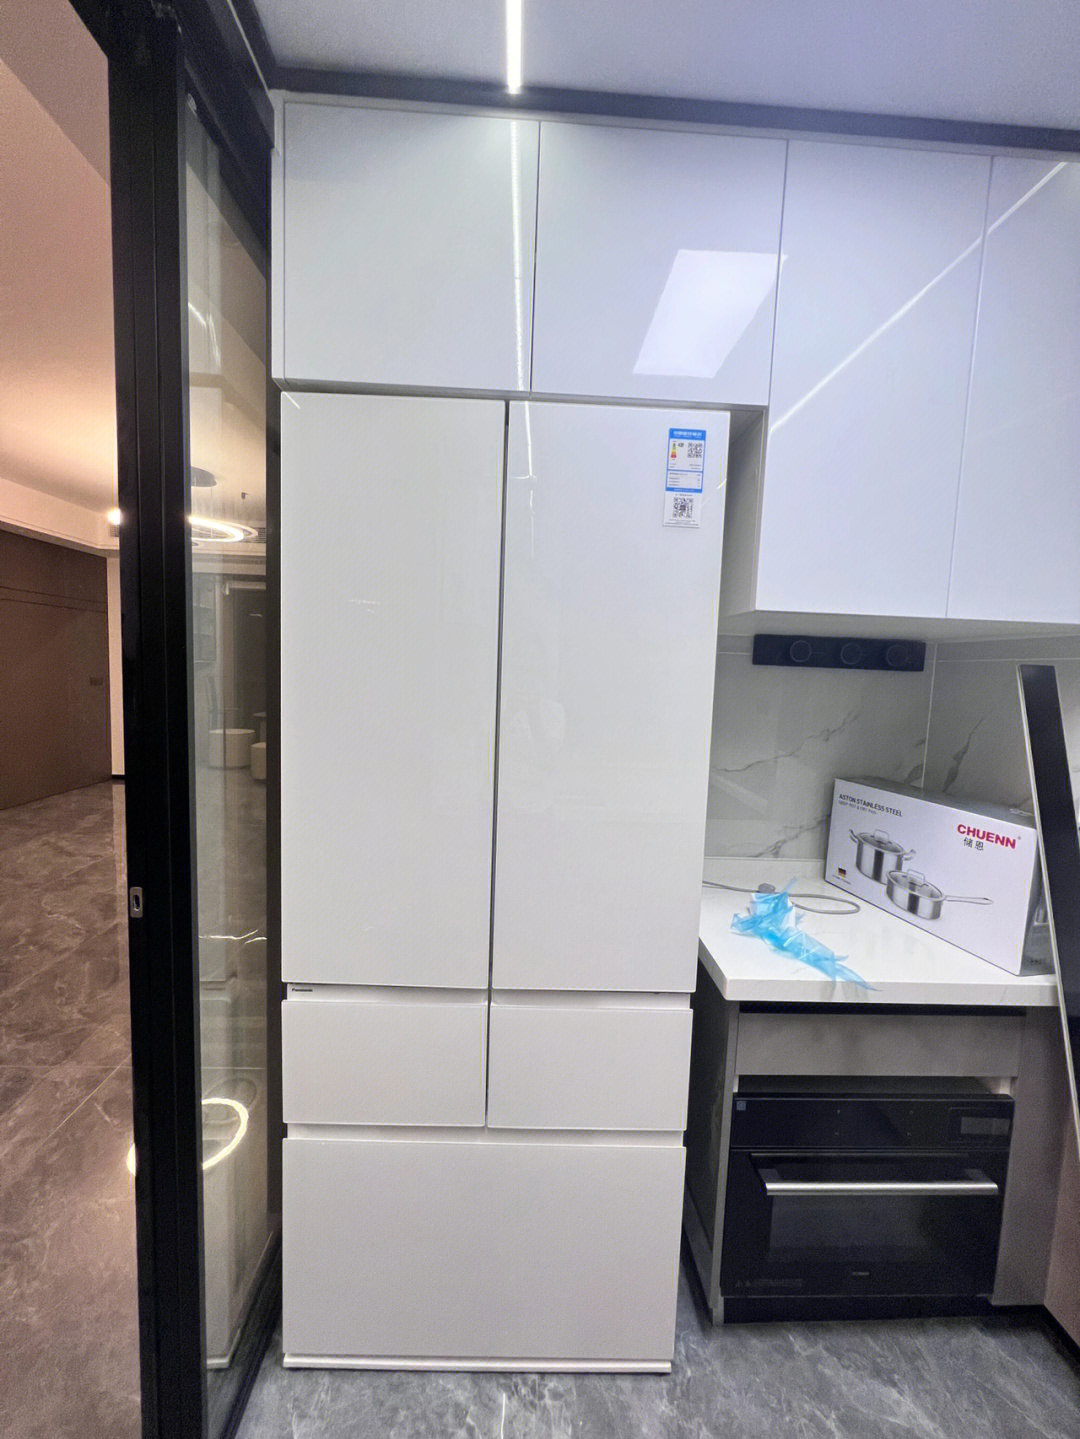 这个冰箱超薄的58cm,适合我们这种厨房不大的,白色颜值也很高,面板